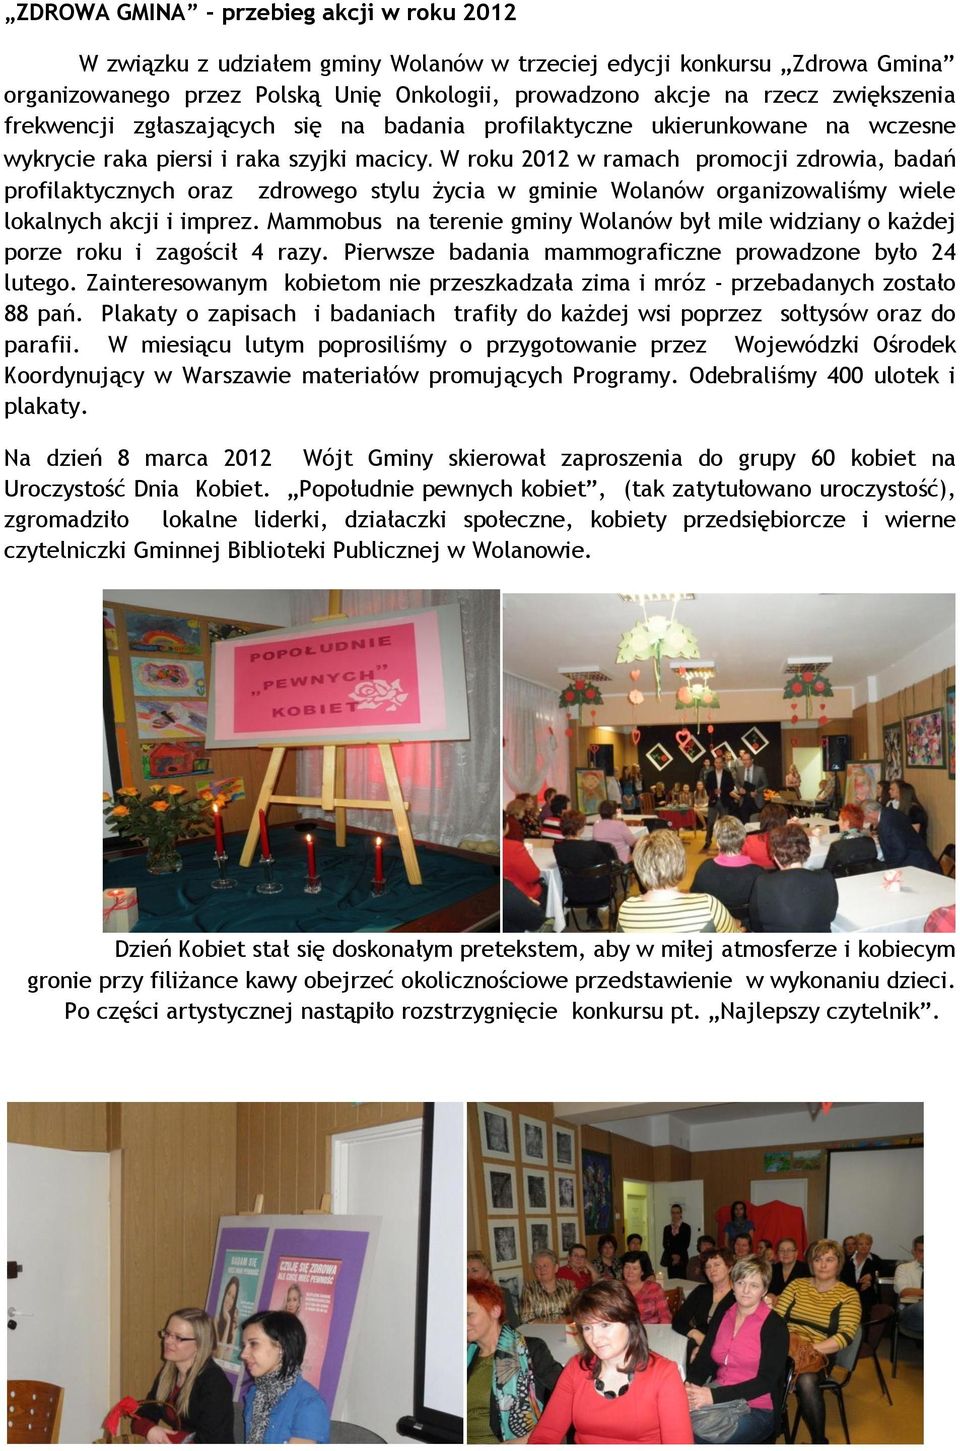 W roku 2012 w ramach promocji zdrowia, badań profilaktycznych oraz zdrowego stylu życia w gminie Wolanów organizowaliśmy wiele lokalnych akcji i imprez.